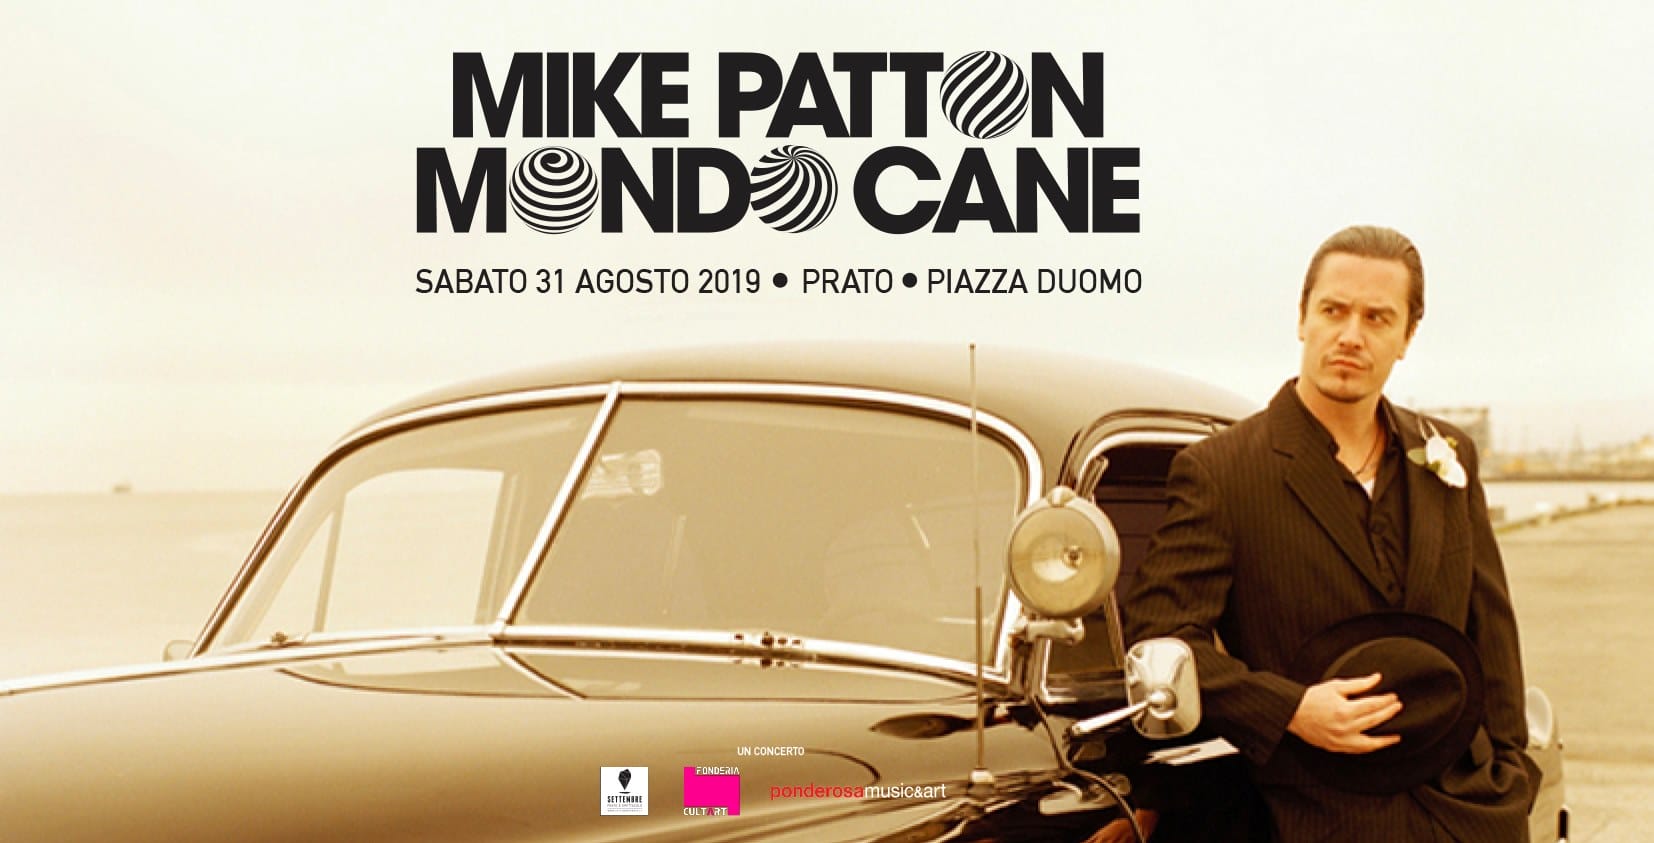 Mike Patton “Mondo cane” in concerto